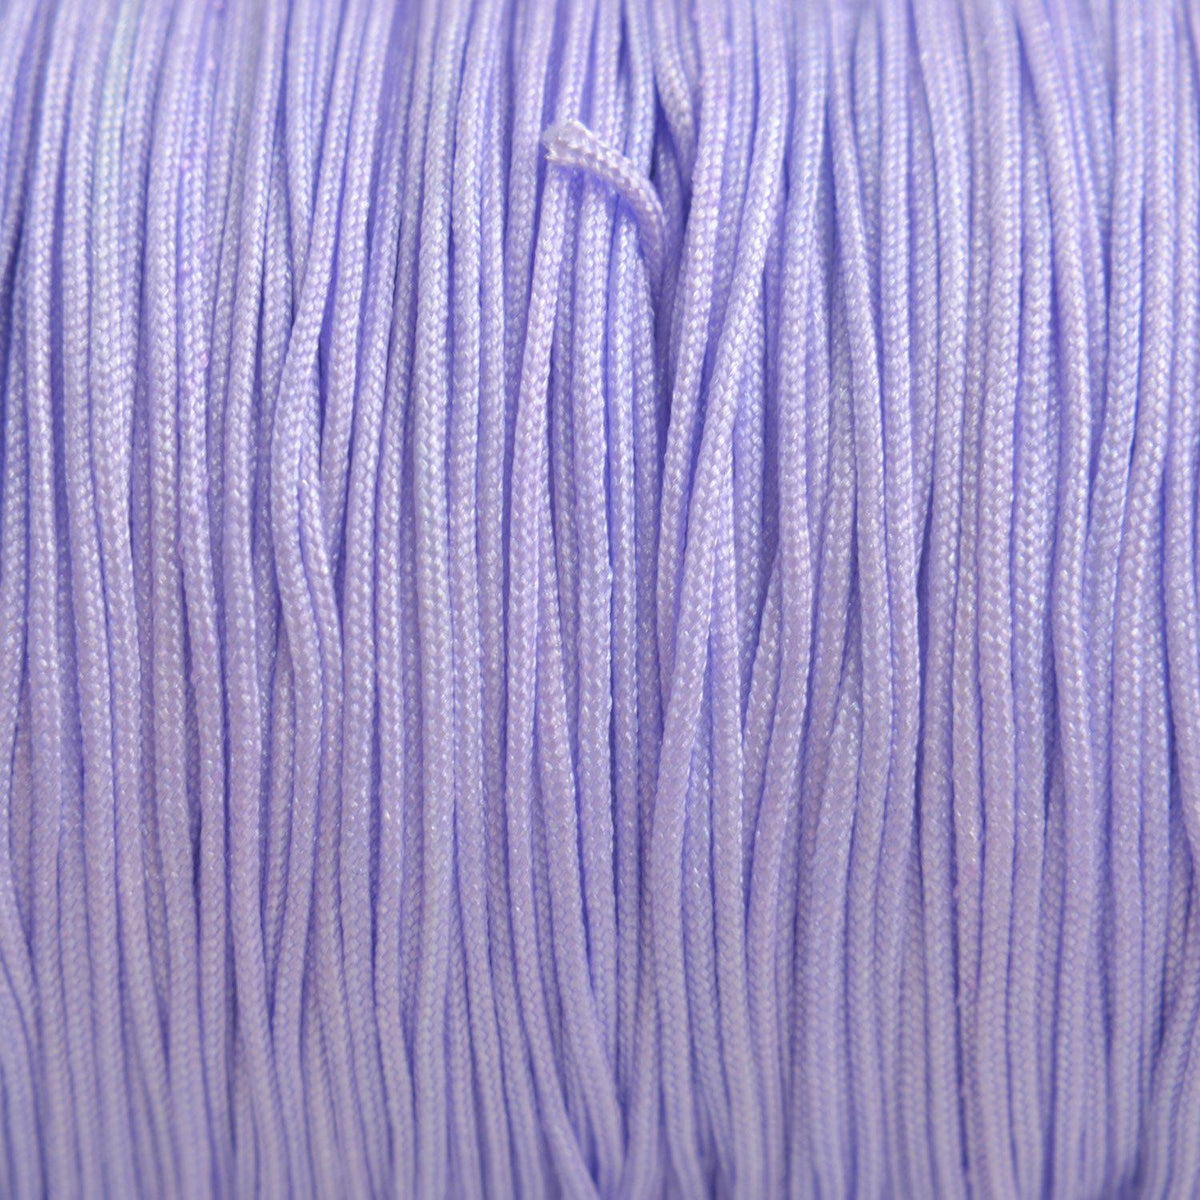 Rol nylon koord lila paars 0.8mm - 120 meter-Kraaltjes van Renate